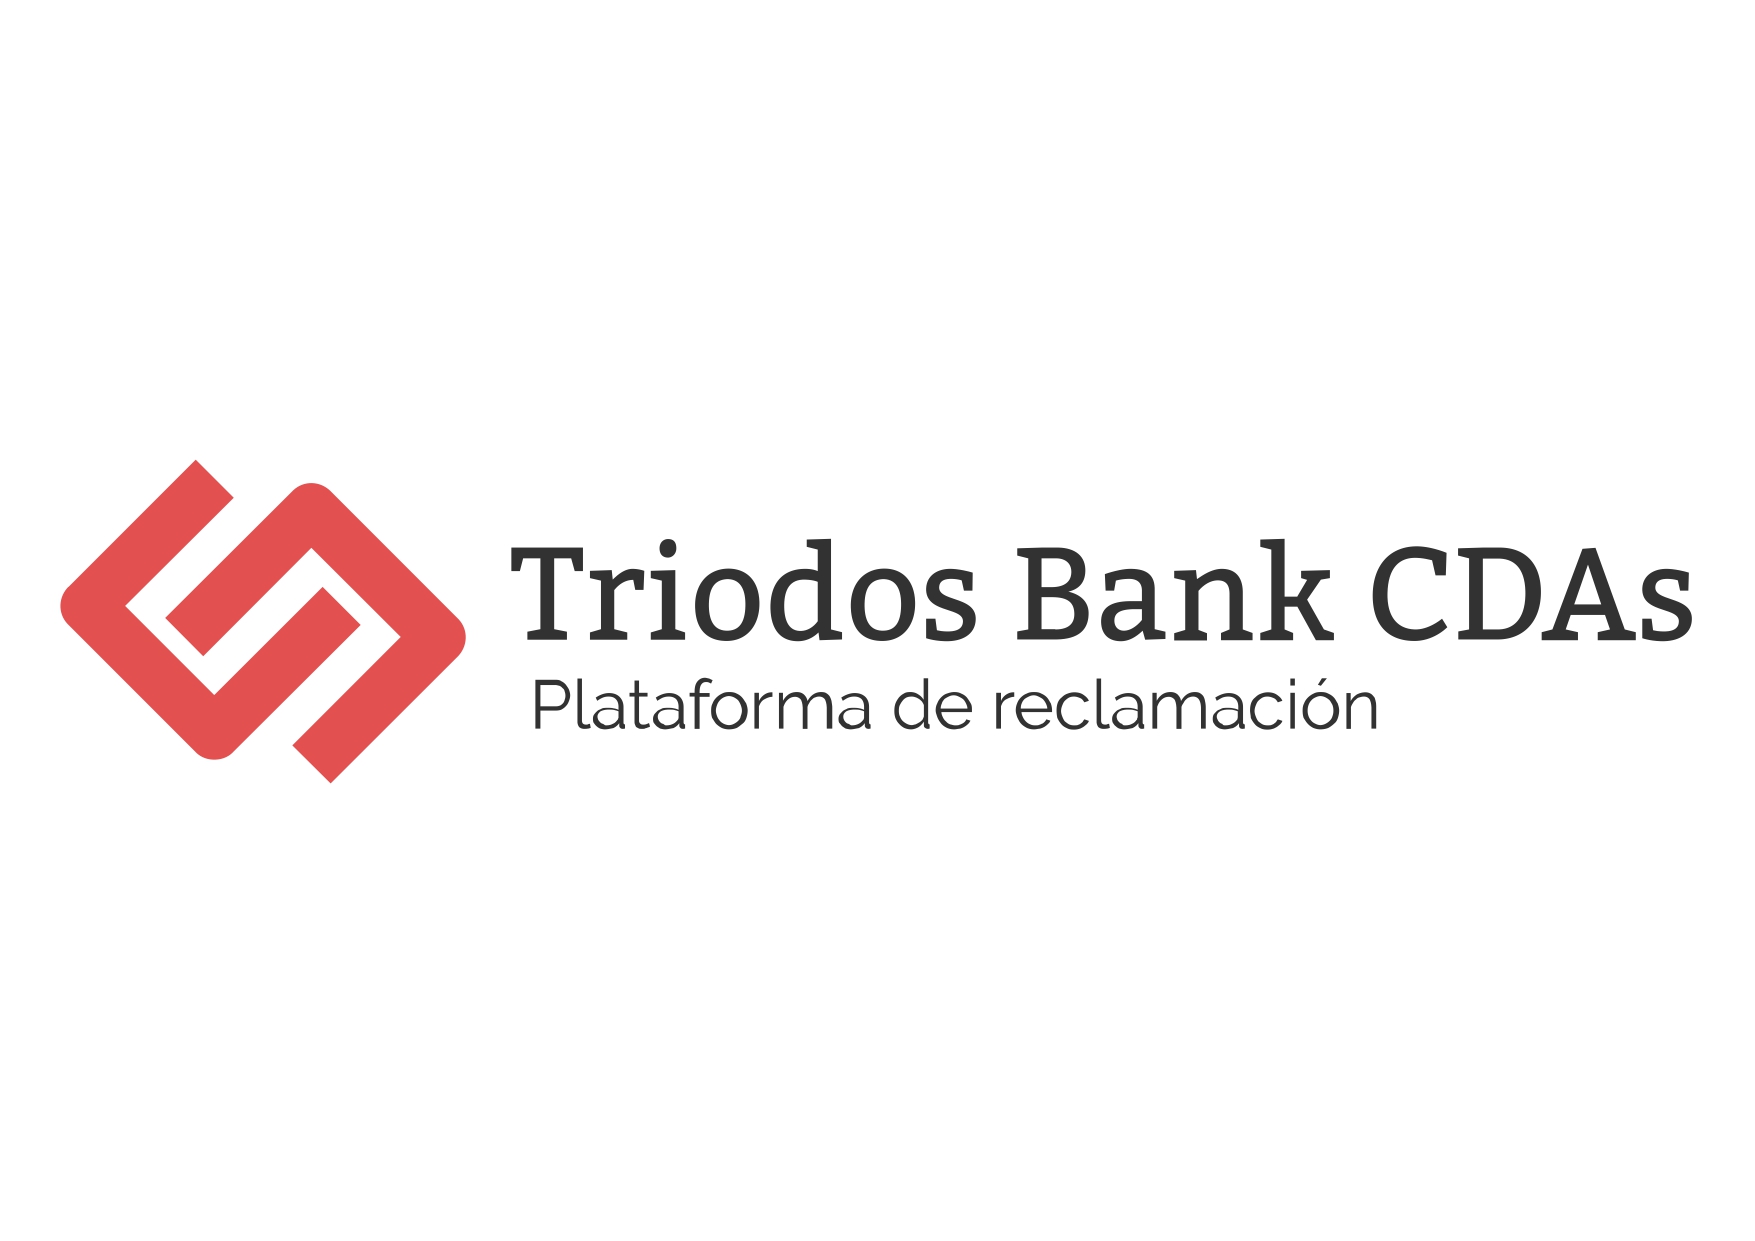 Logo CDAs Triodos Bankjpg